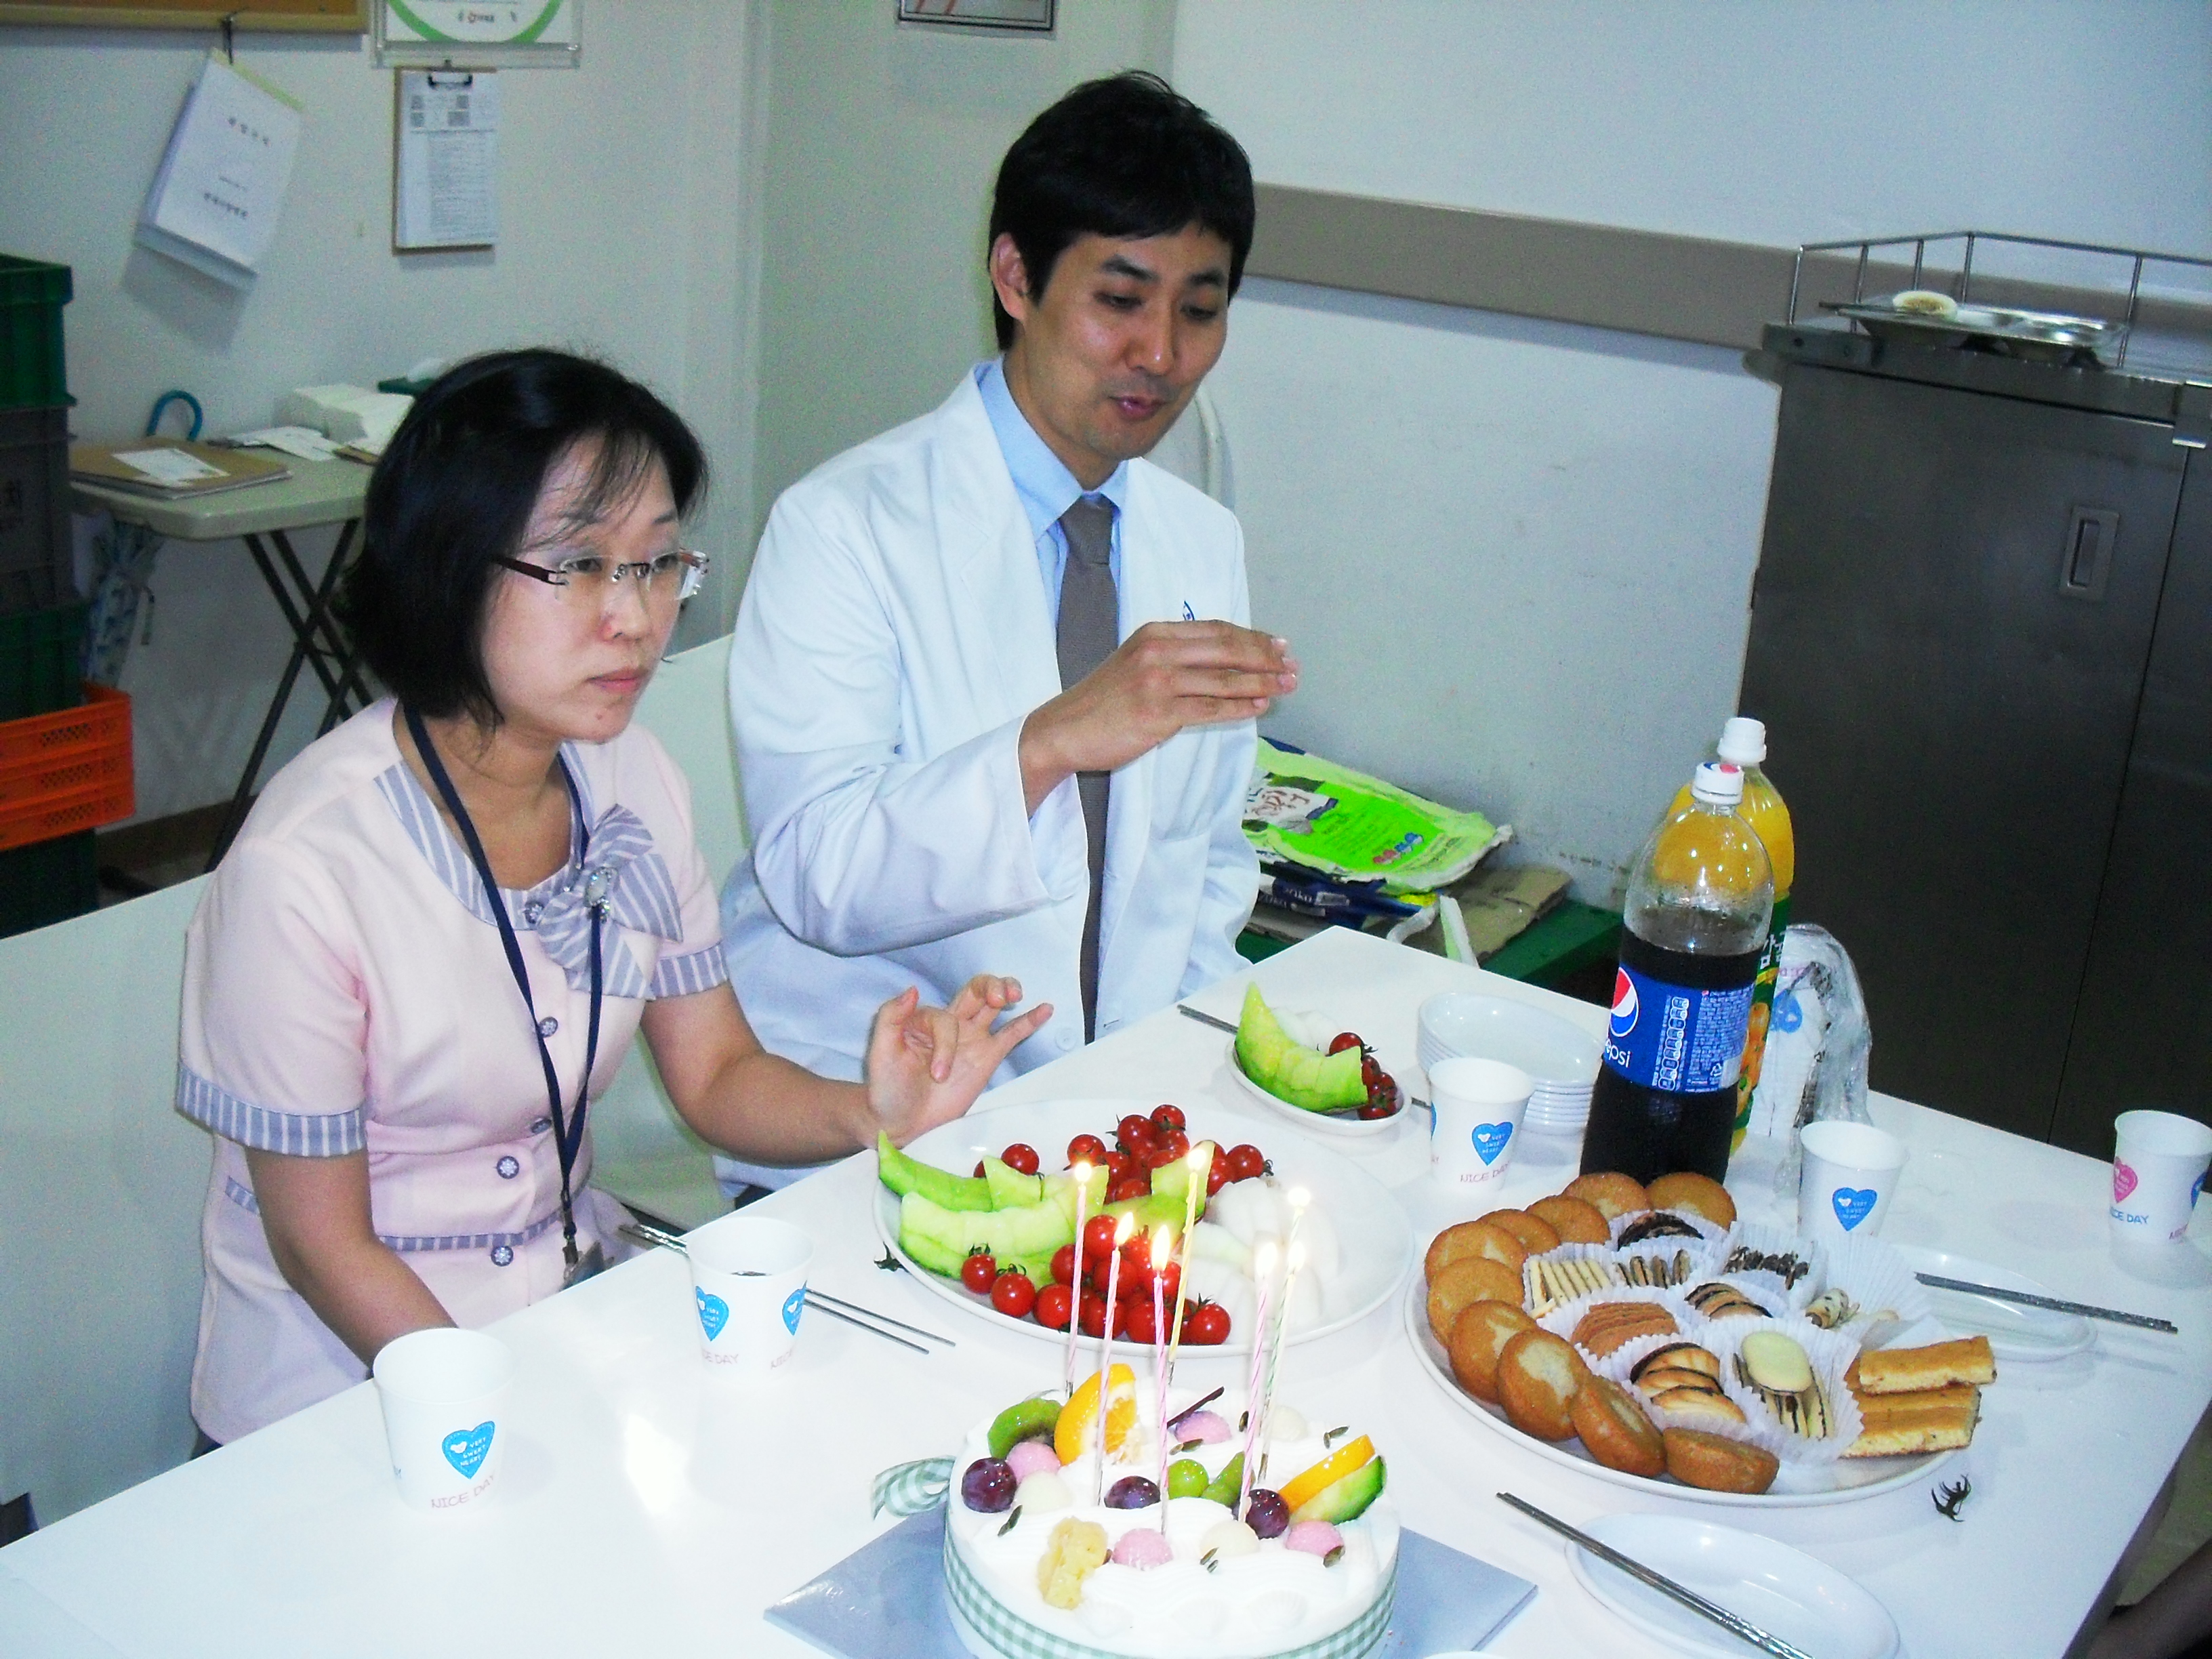 강남 1병원 7월 달 직원 생일파티 게시글의 5번째 첨부파일입니다.